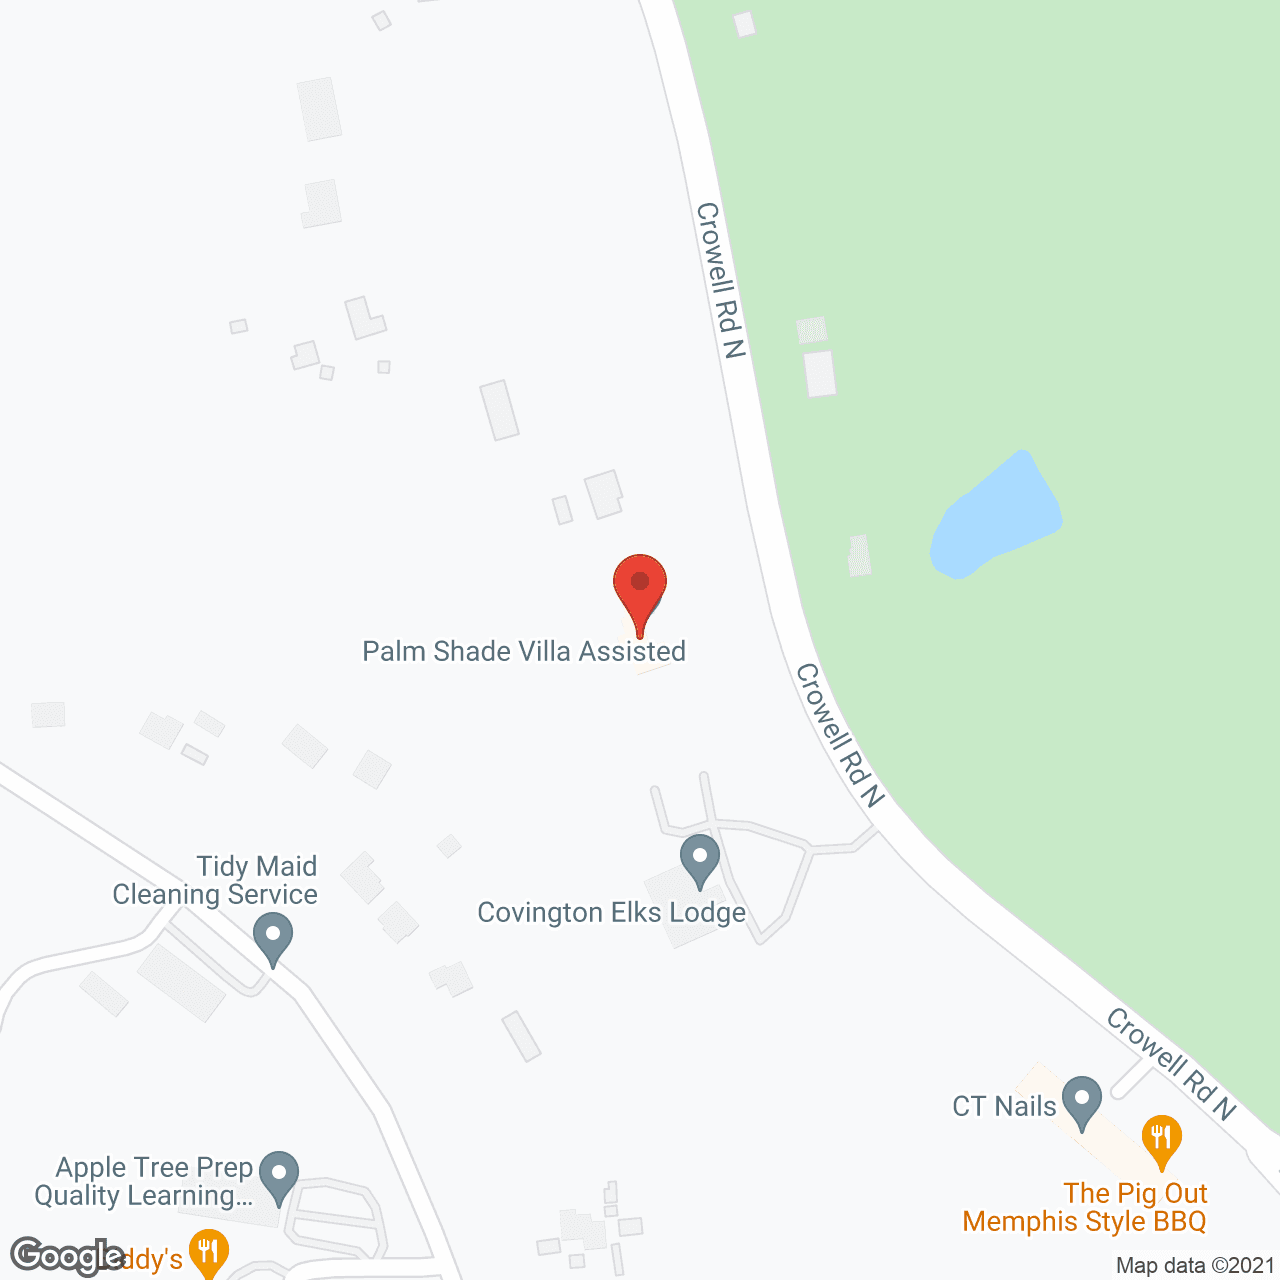 Palm Shade Villa in google map